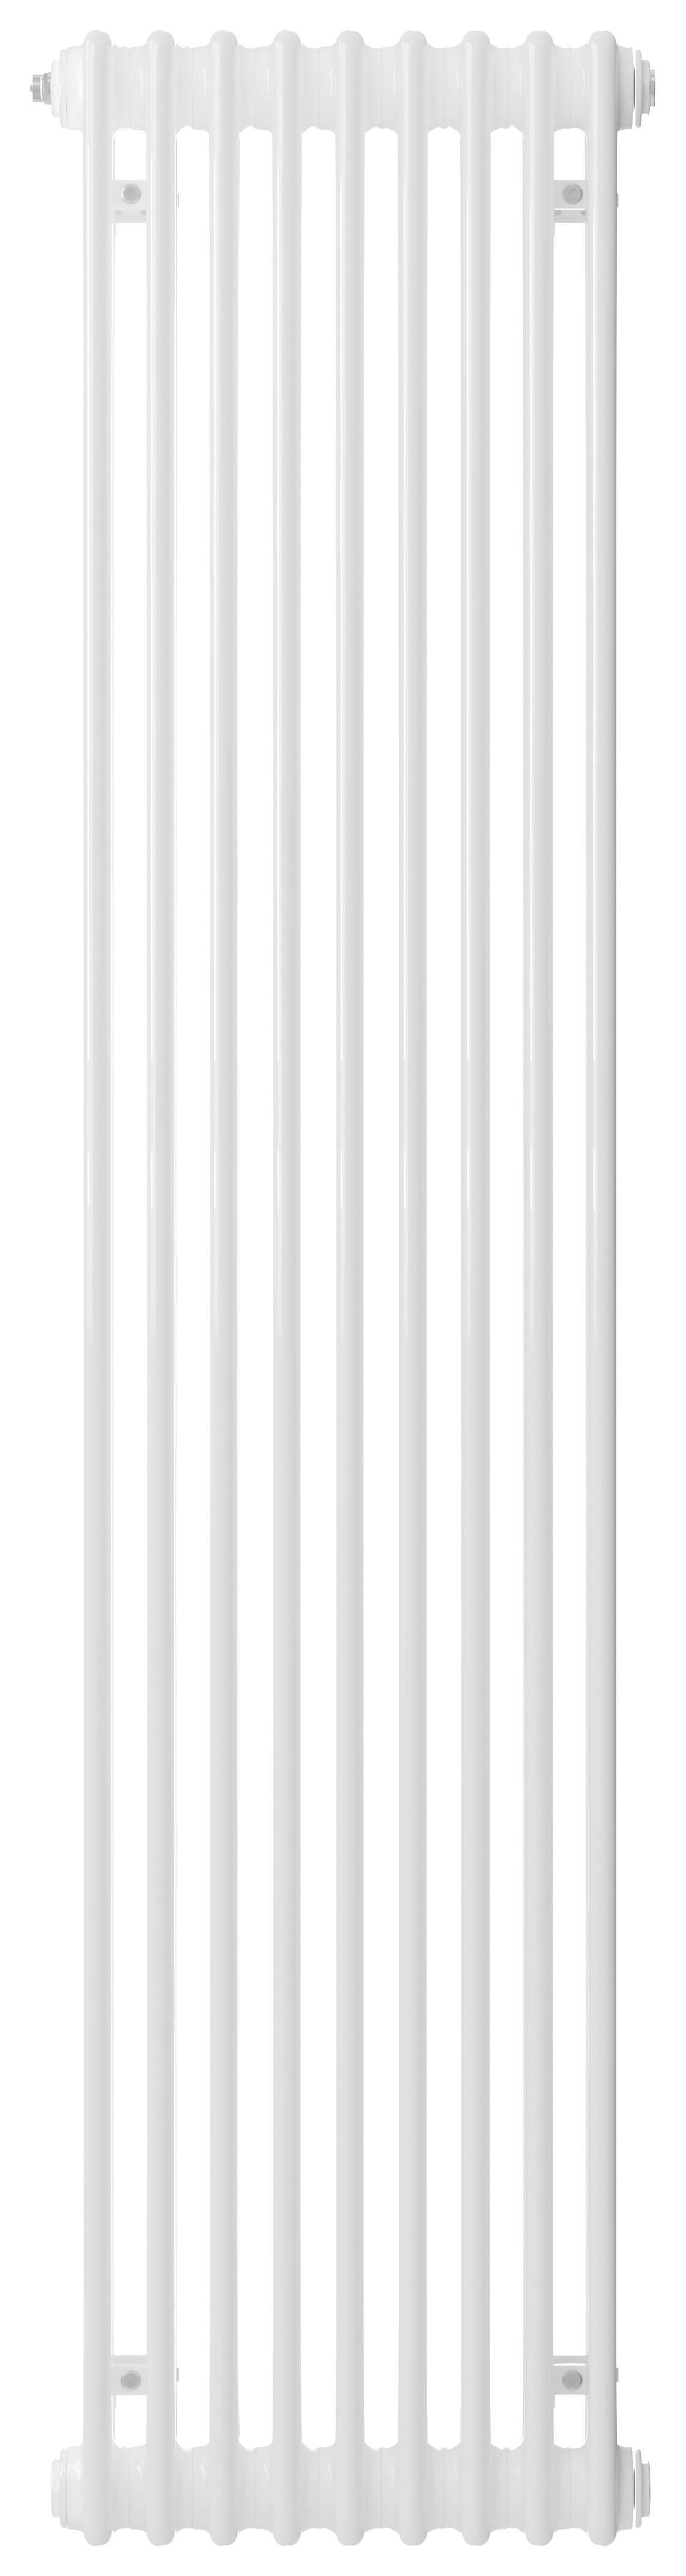 Henrad 2 Column Vertical Designer Radiator - White 2000 x 440 mm